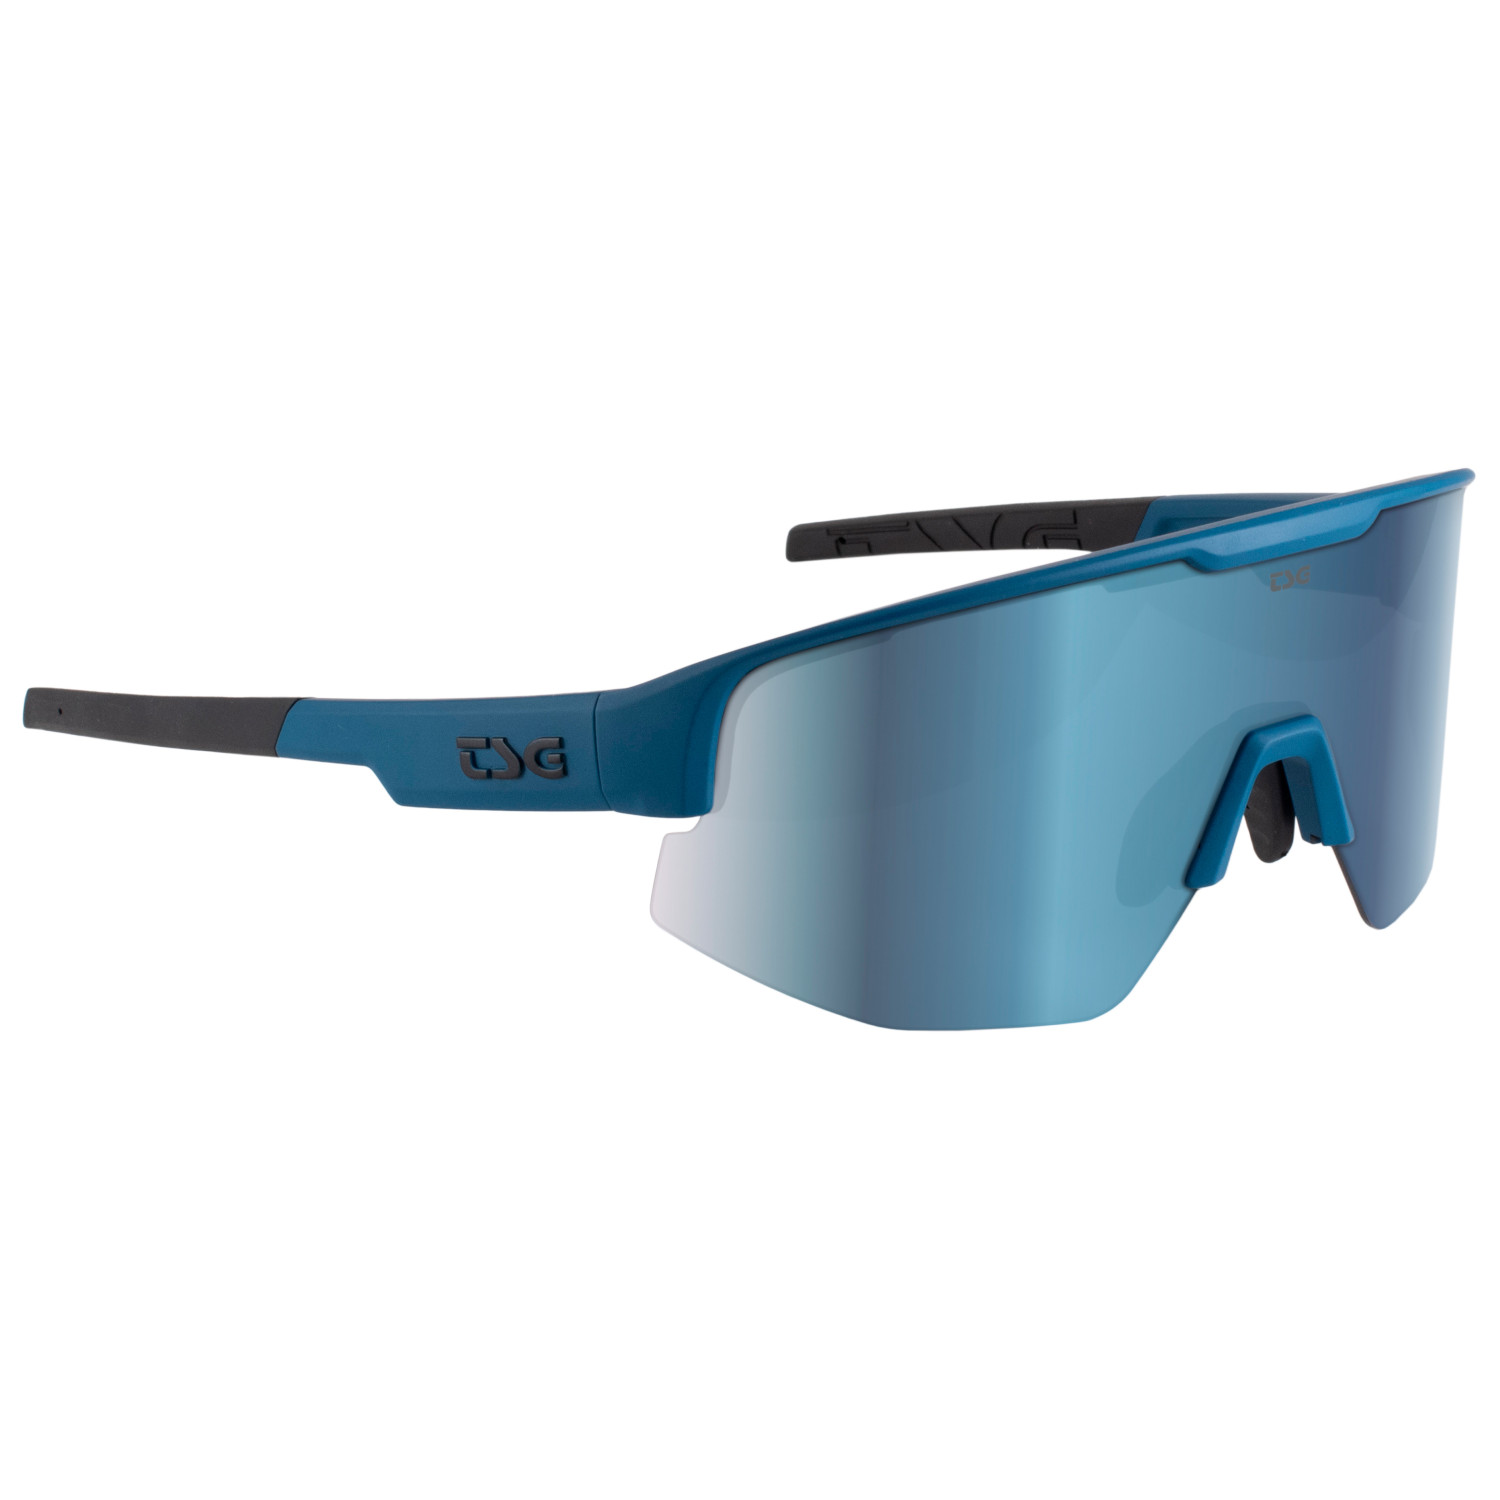 Велосипедные очки Tsg Loam Sunglasses, темно синий солнцезащитные очки svetodar116 очки велосипедные спорт очки темно синий белый